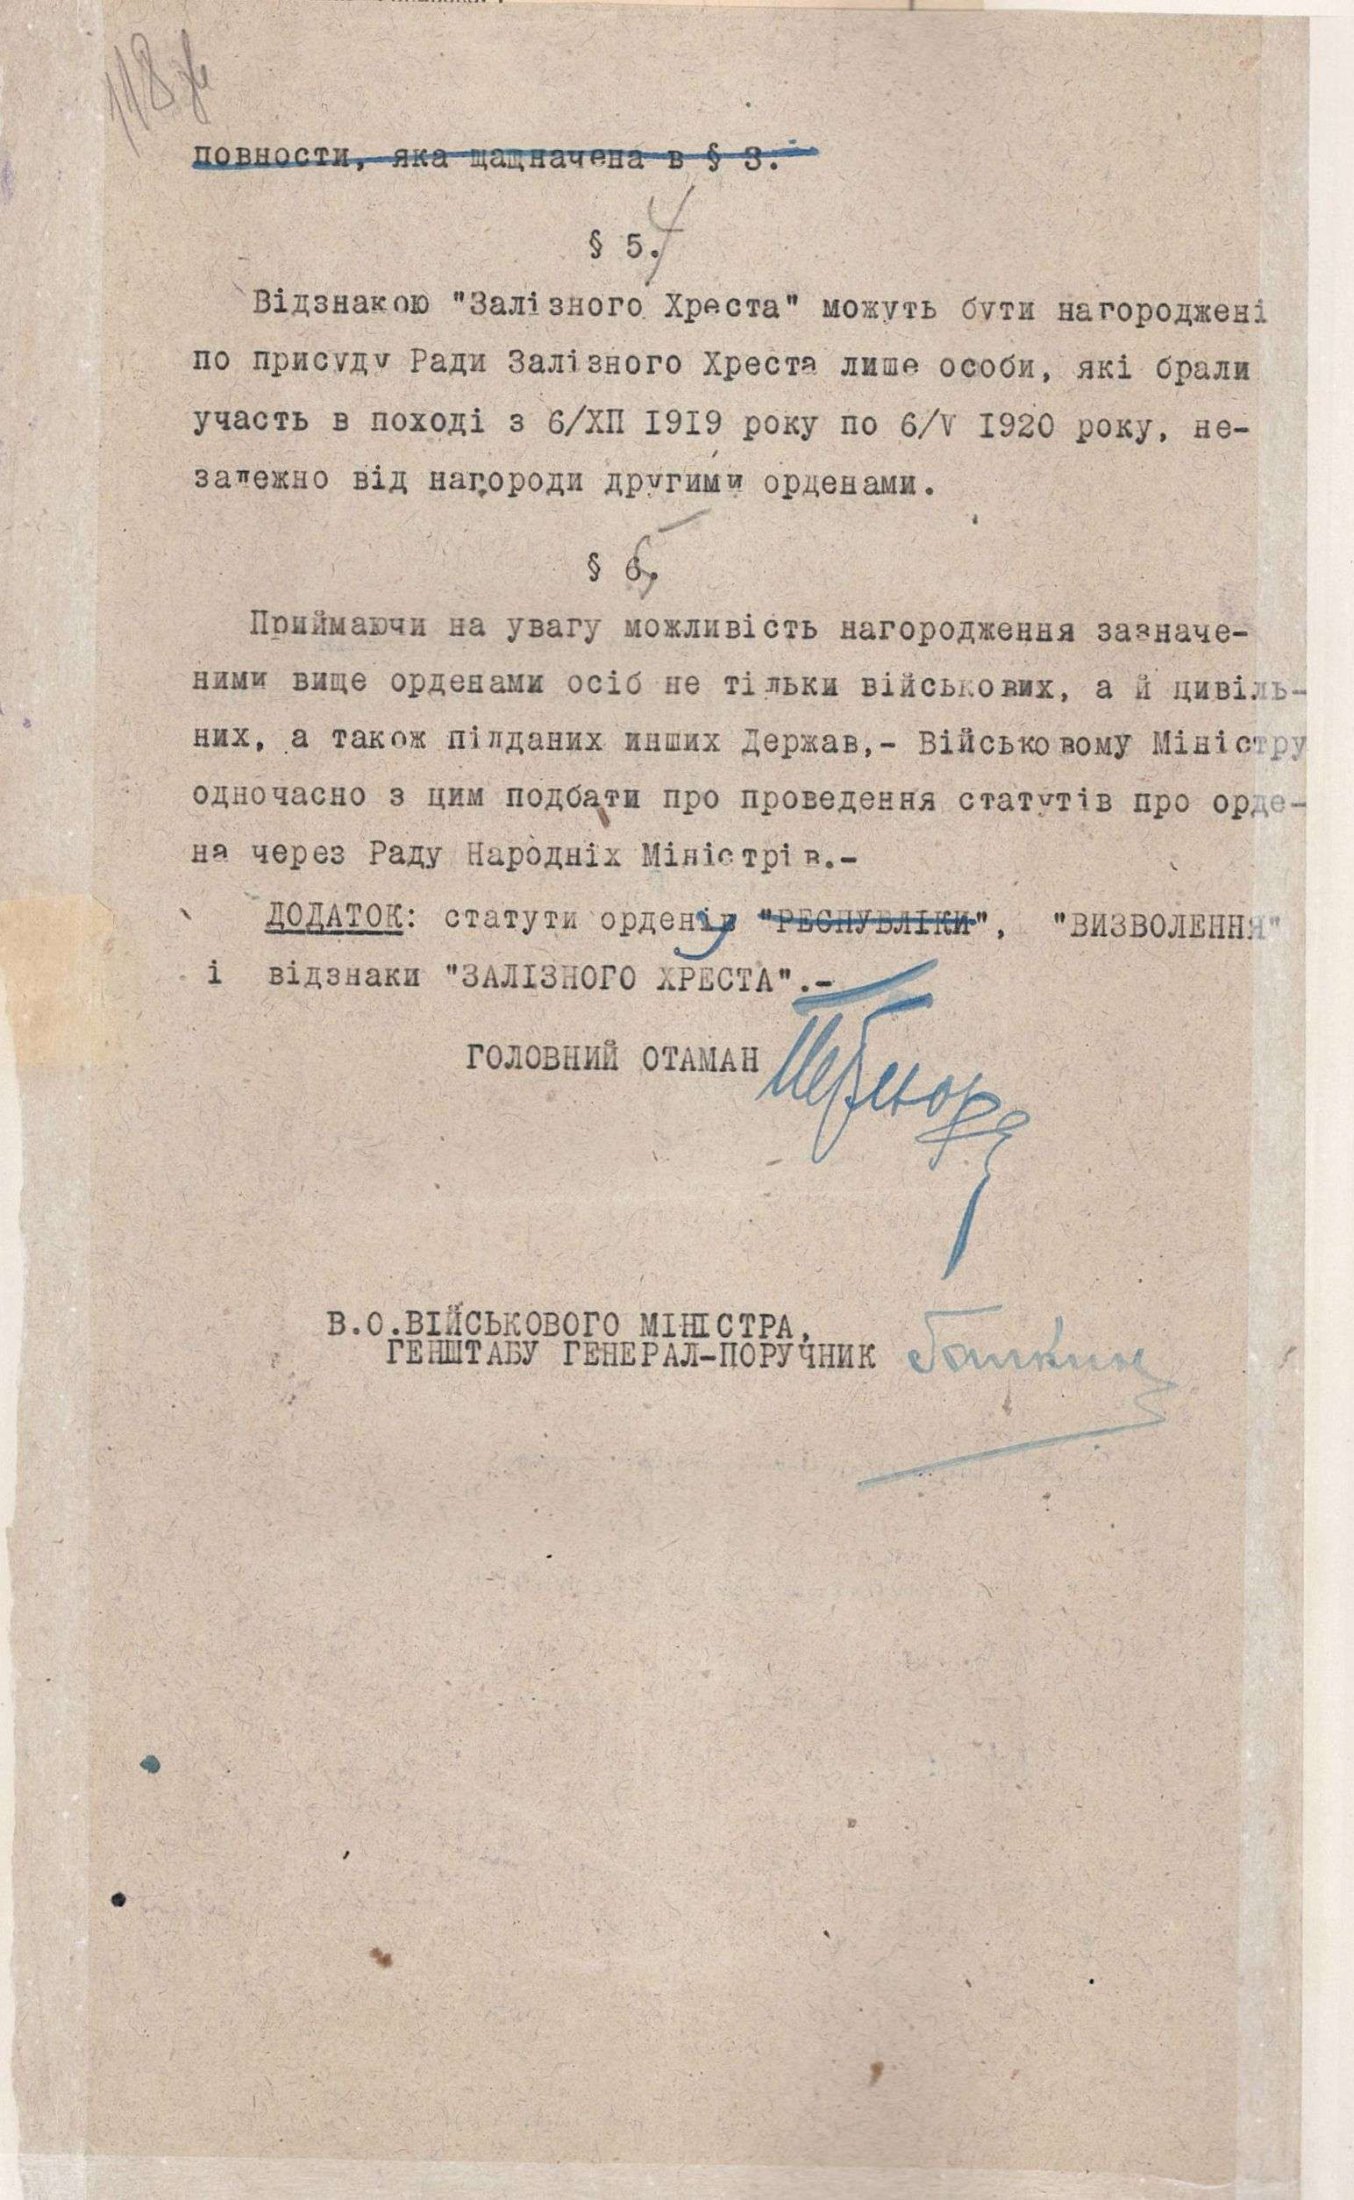 Наказ Головної команди війська УНР ч. 083 про встановлення ордену “Визволення” і відзнаки “Залізного Хреста”. 19 жовтня 1920 р.